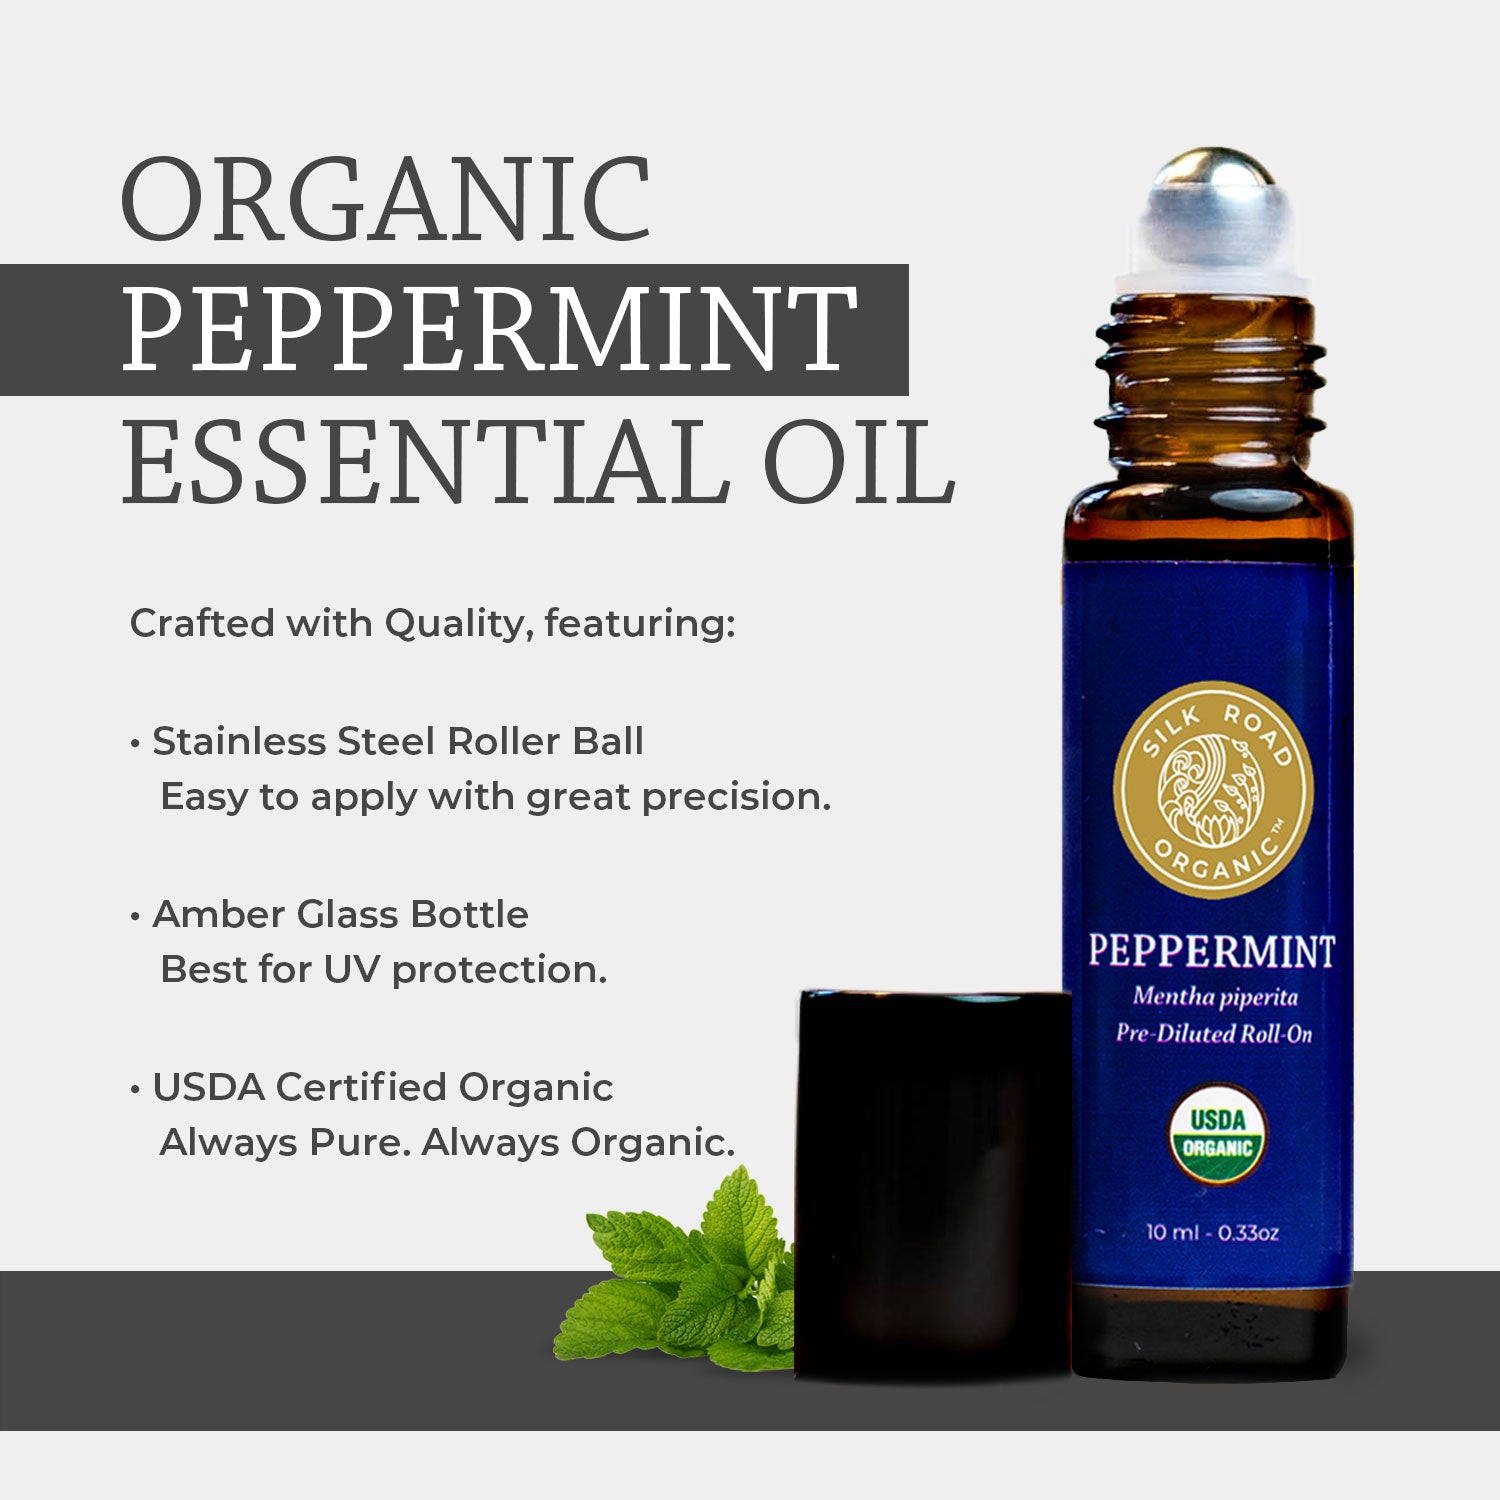 USDA Organic PEPPERMINT Essential Oil Roll-on - Silk Road Organic®